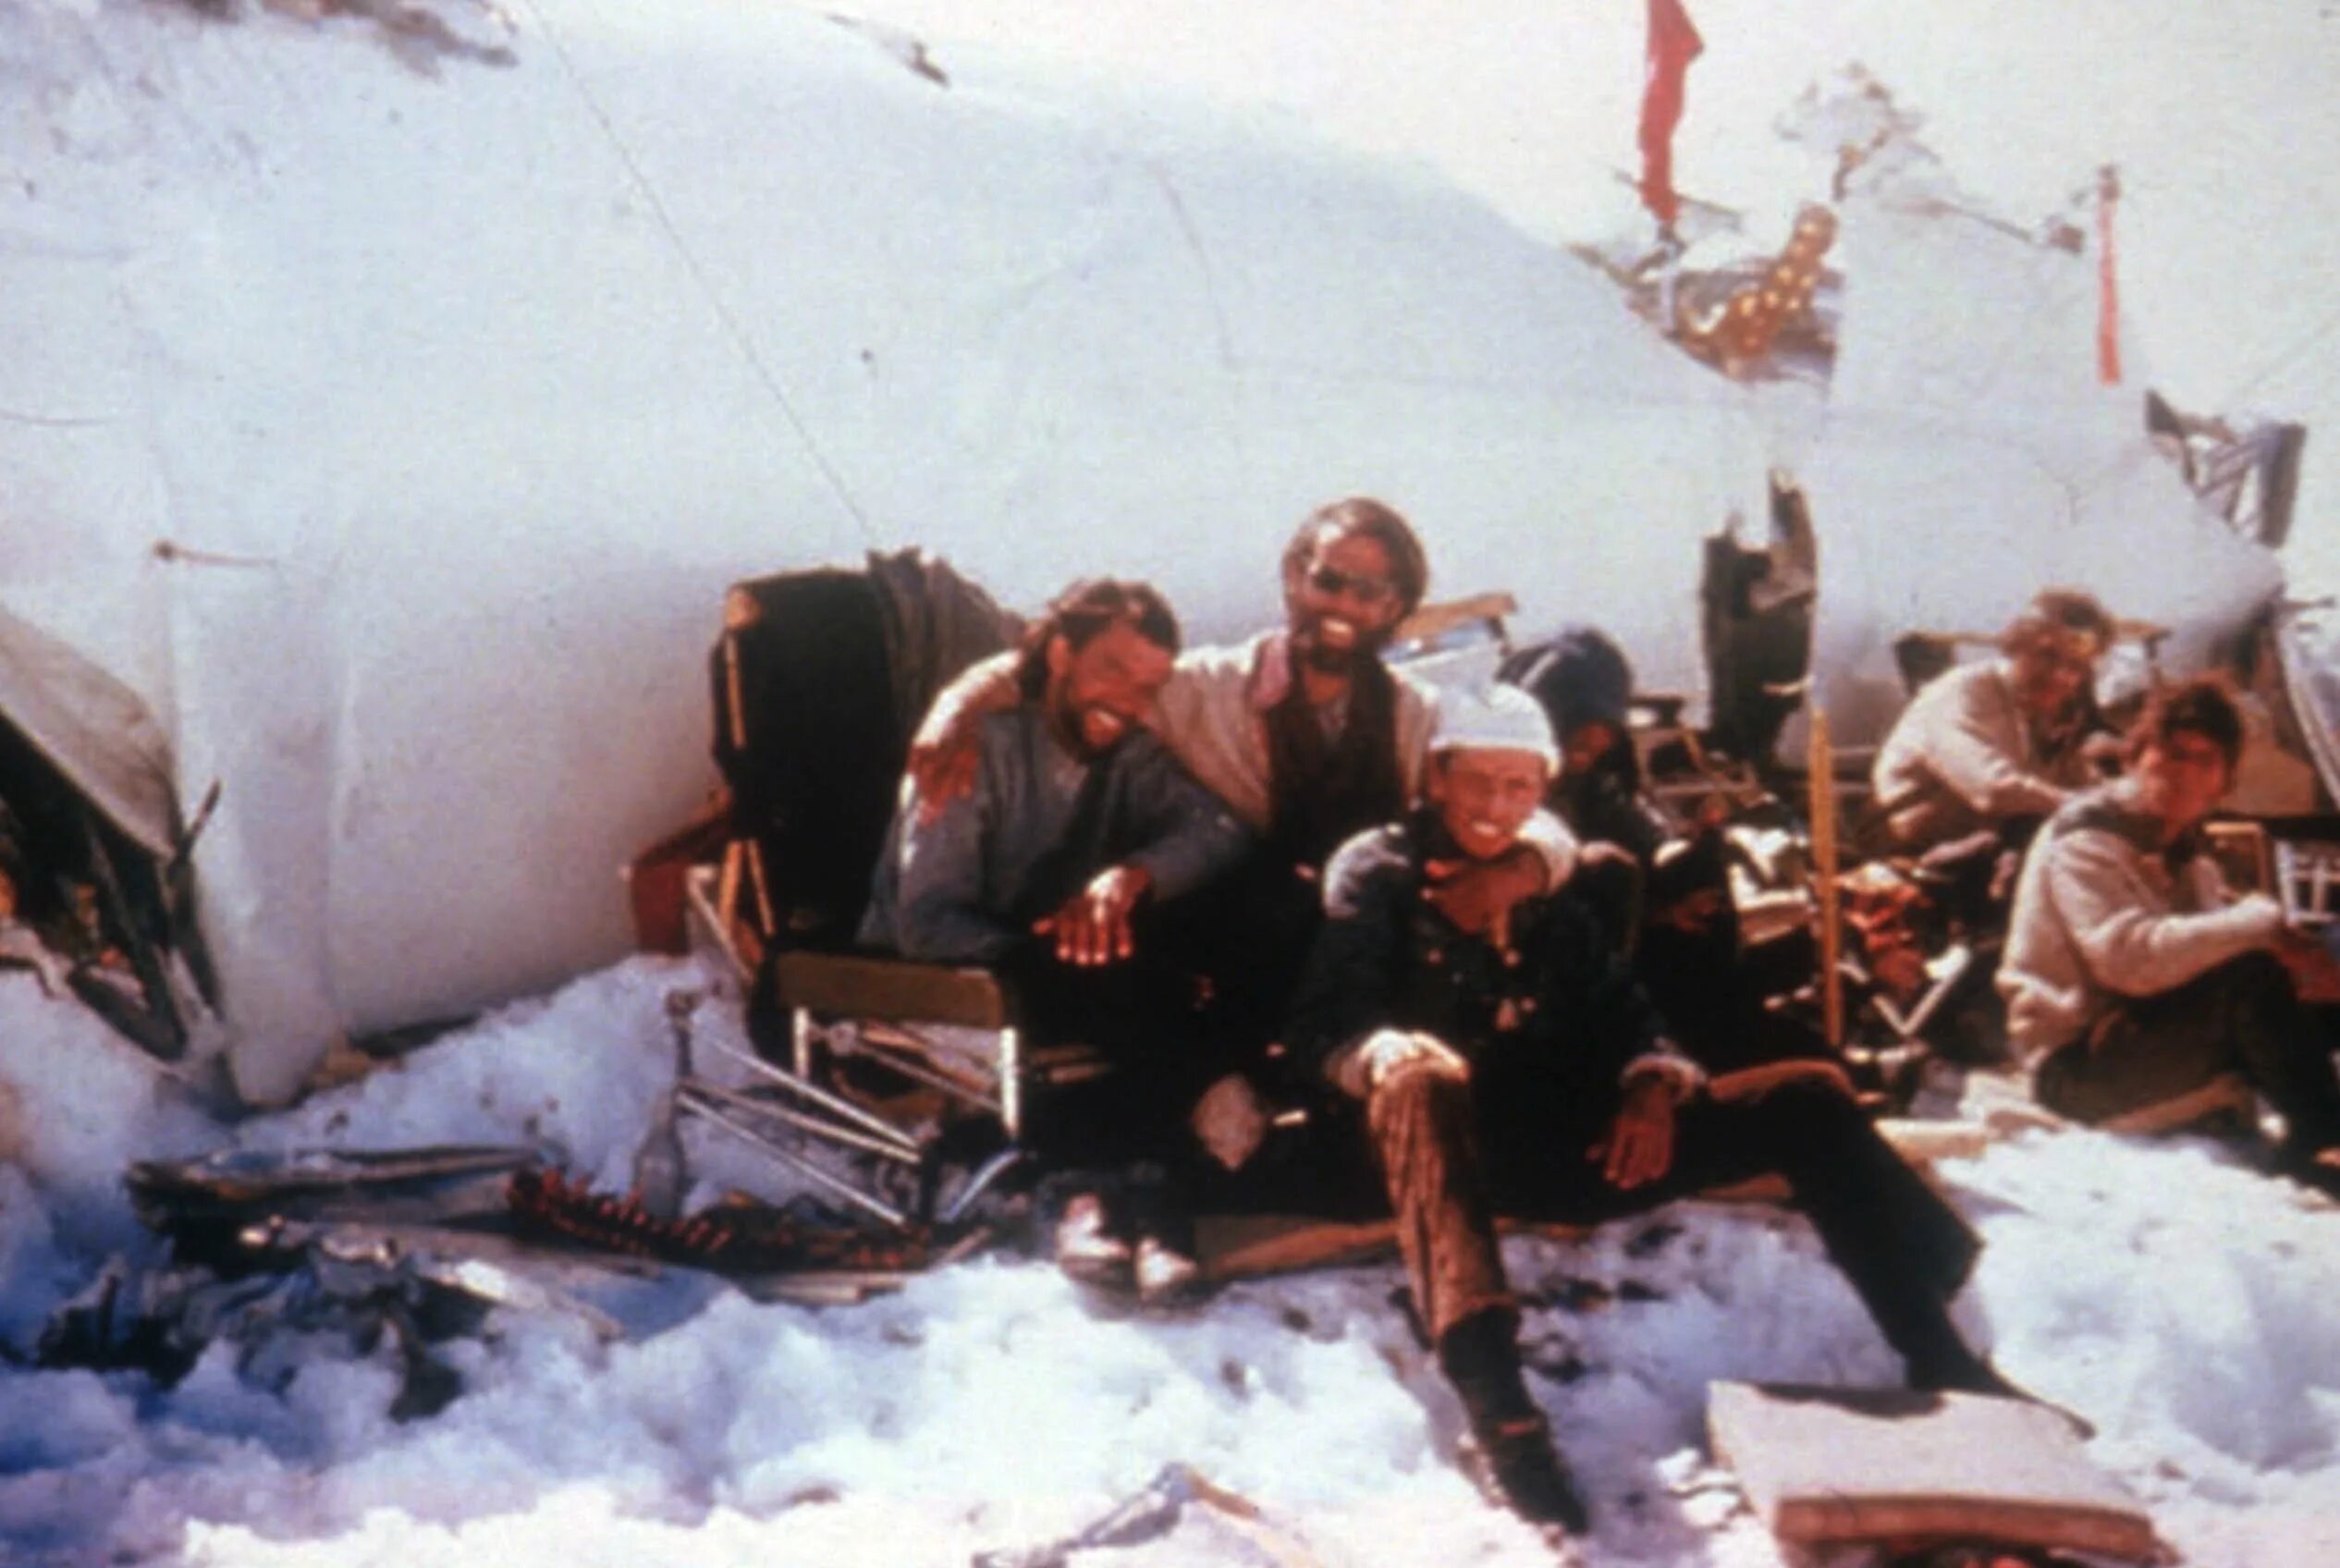 Самолет разбившийся в Андах в 1972. Авиакатастрофа в Чили 1972.